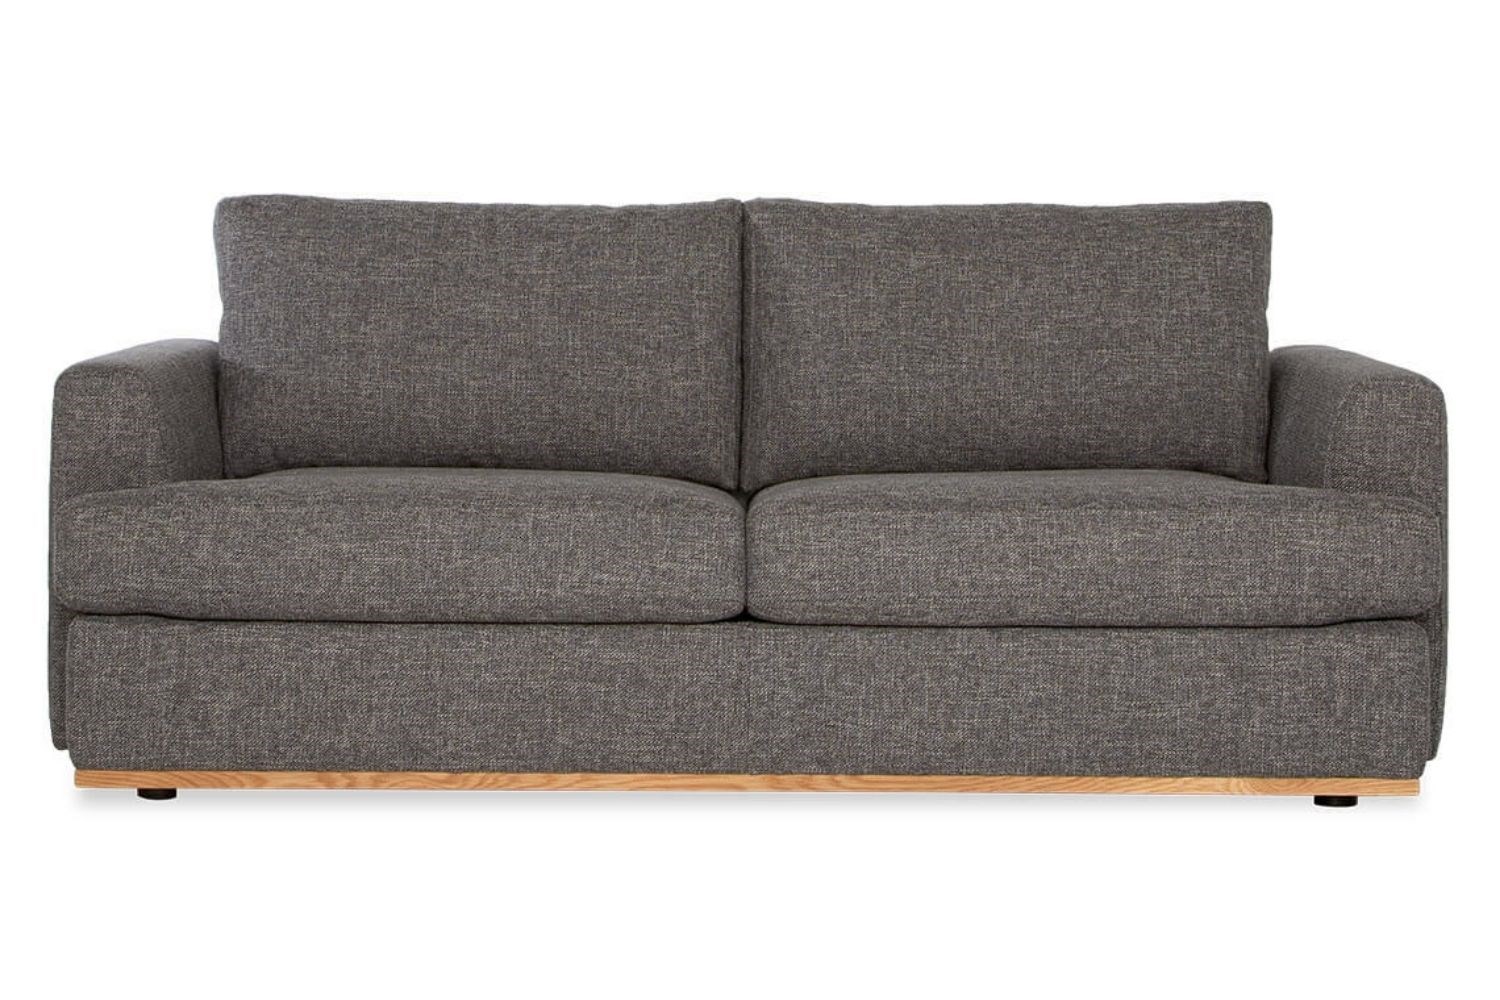 commercial sofa beds queensland